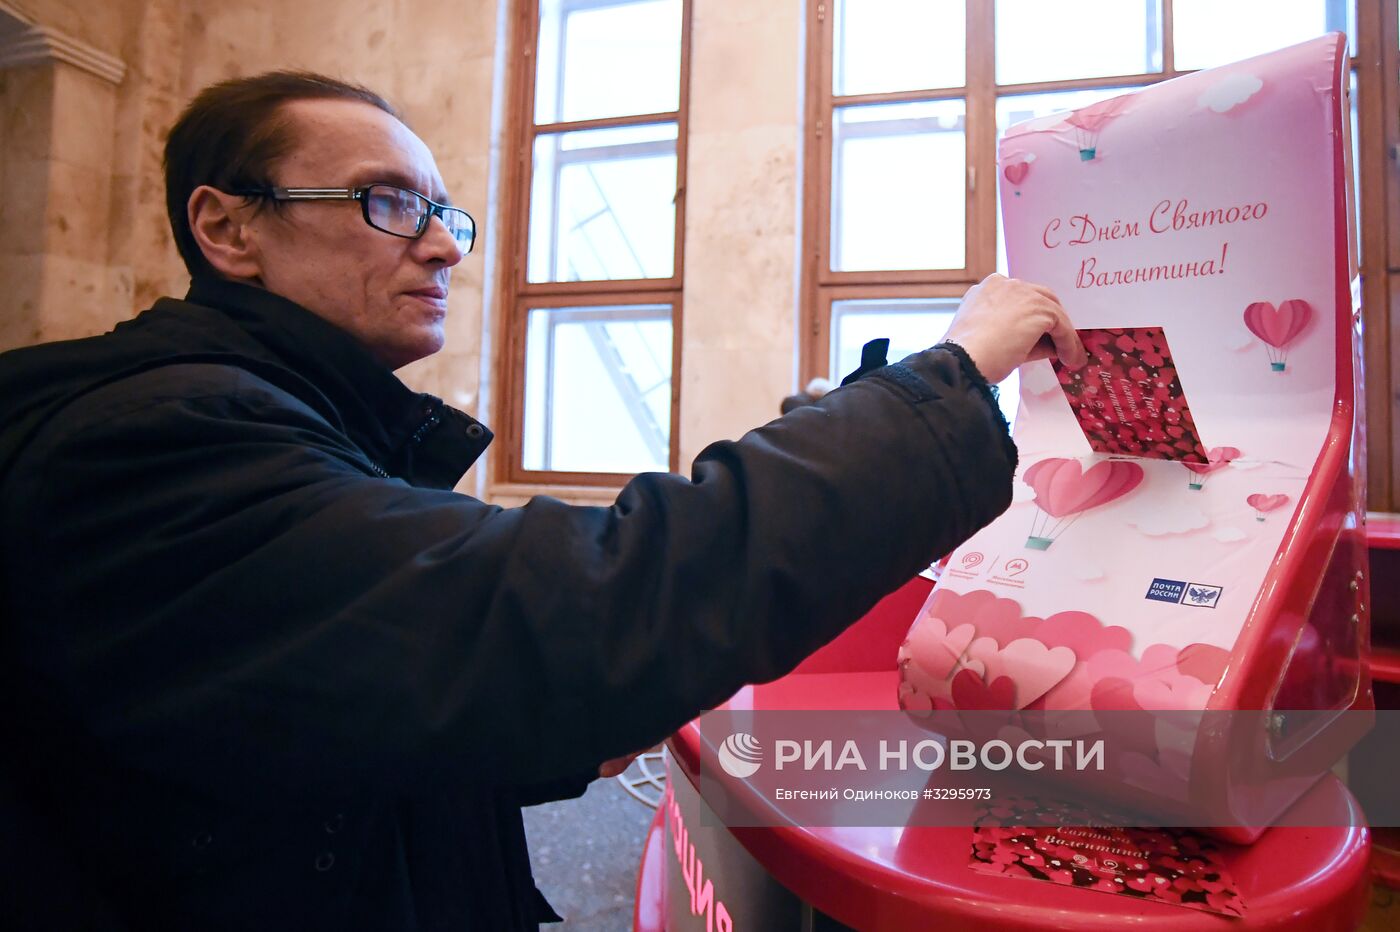 Сервис по доставке "валентинок" запустили в московском метро